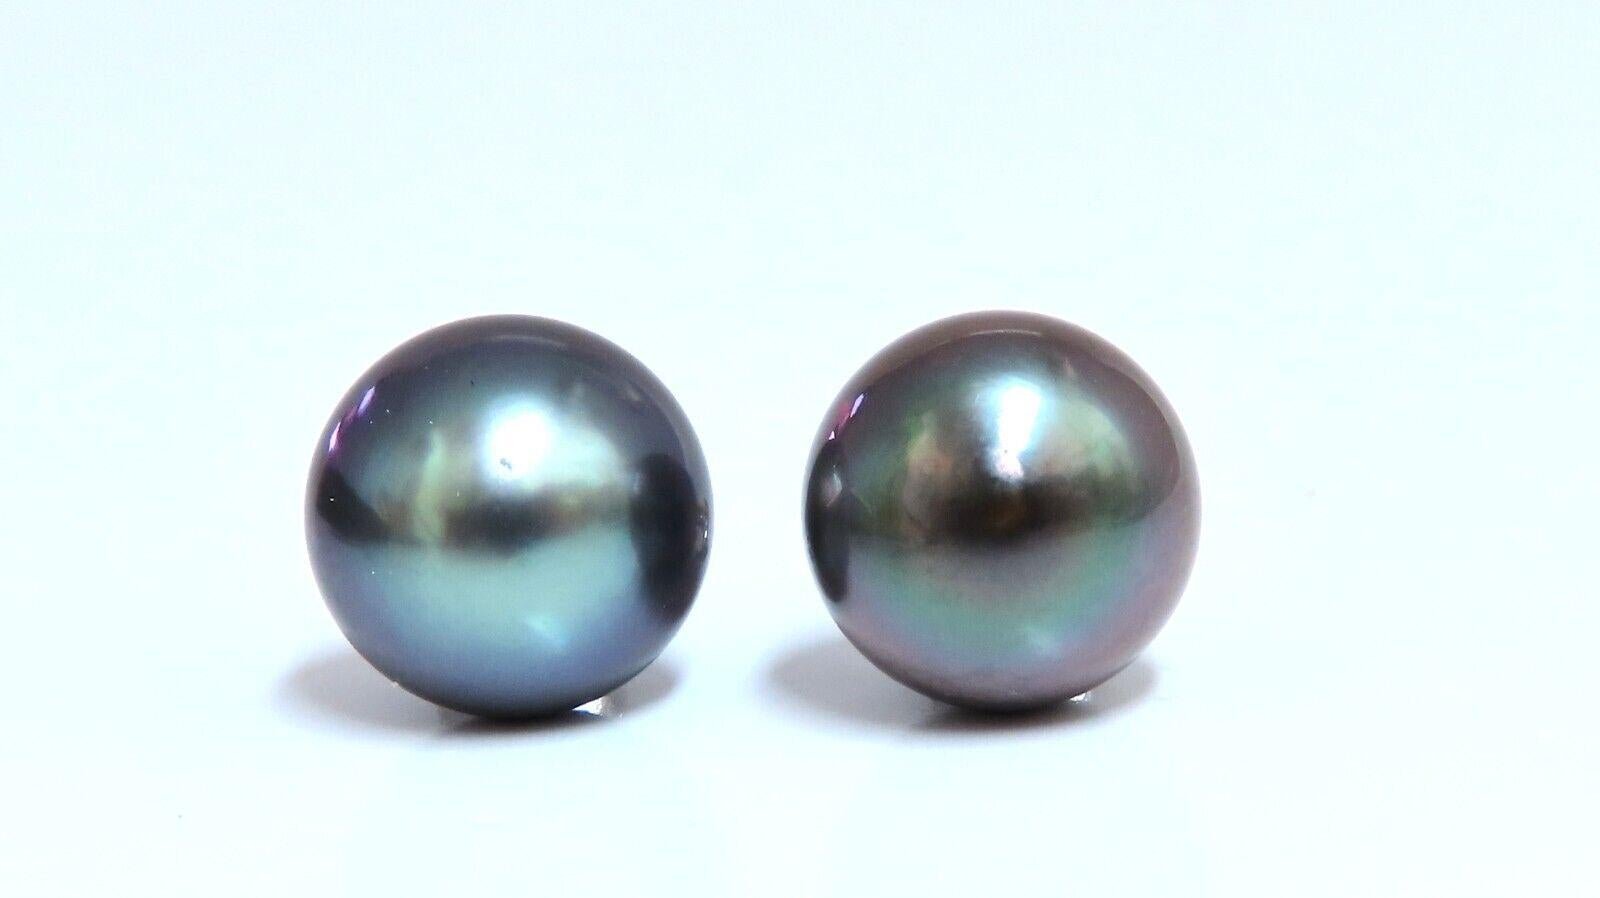 Boucles d'oreilles en perles de paon de Tahiti.

Perle de 9,5 mm

Or blanc 14 carats 2,9 grammes

Papillon confortable

.